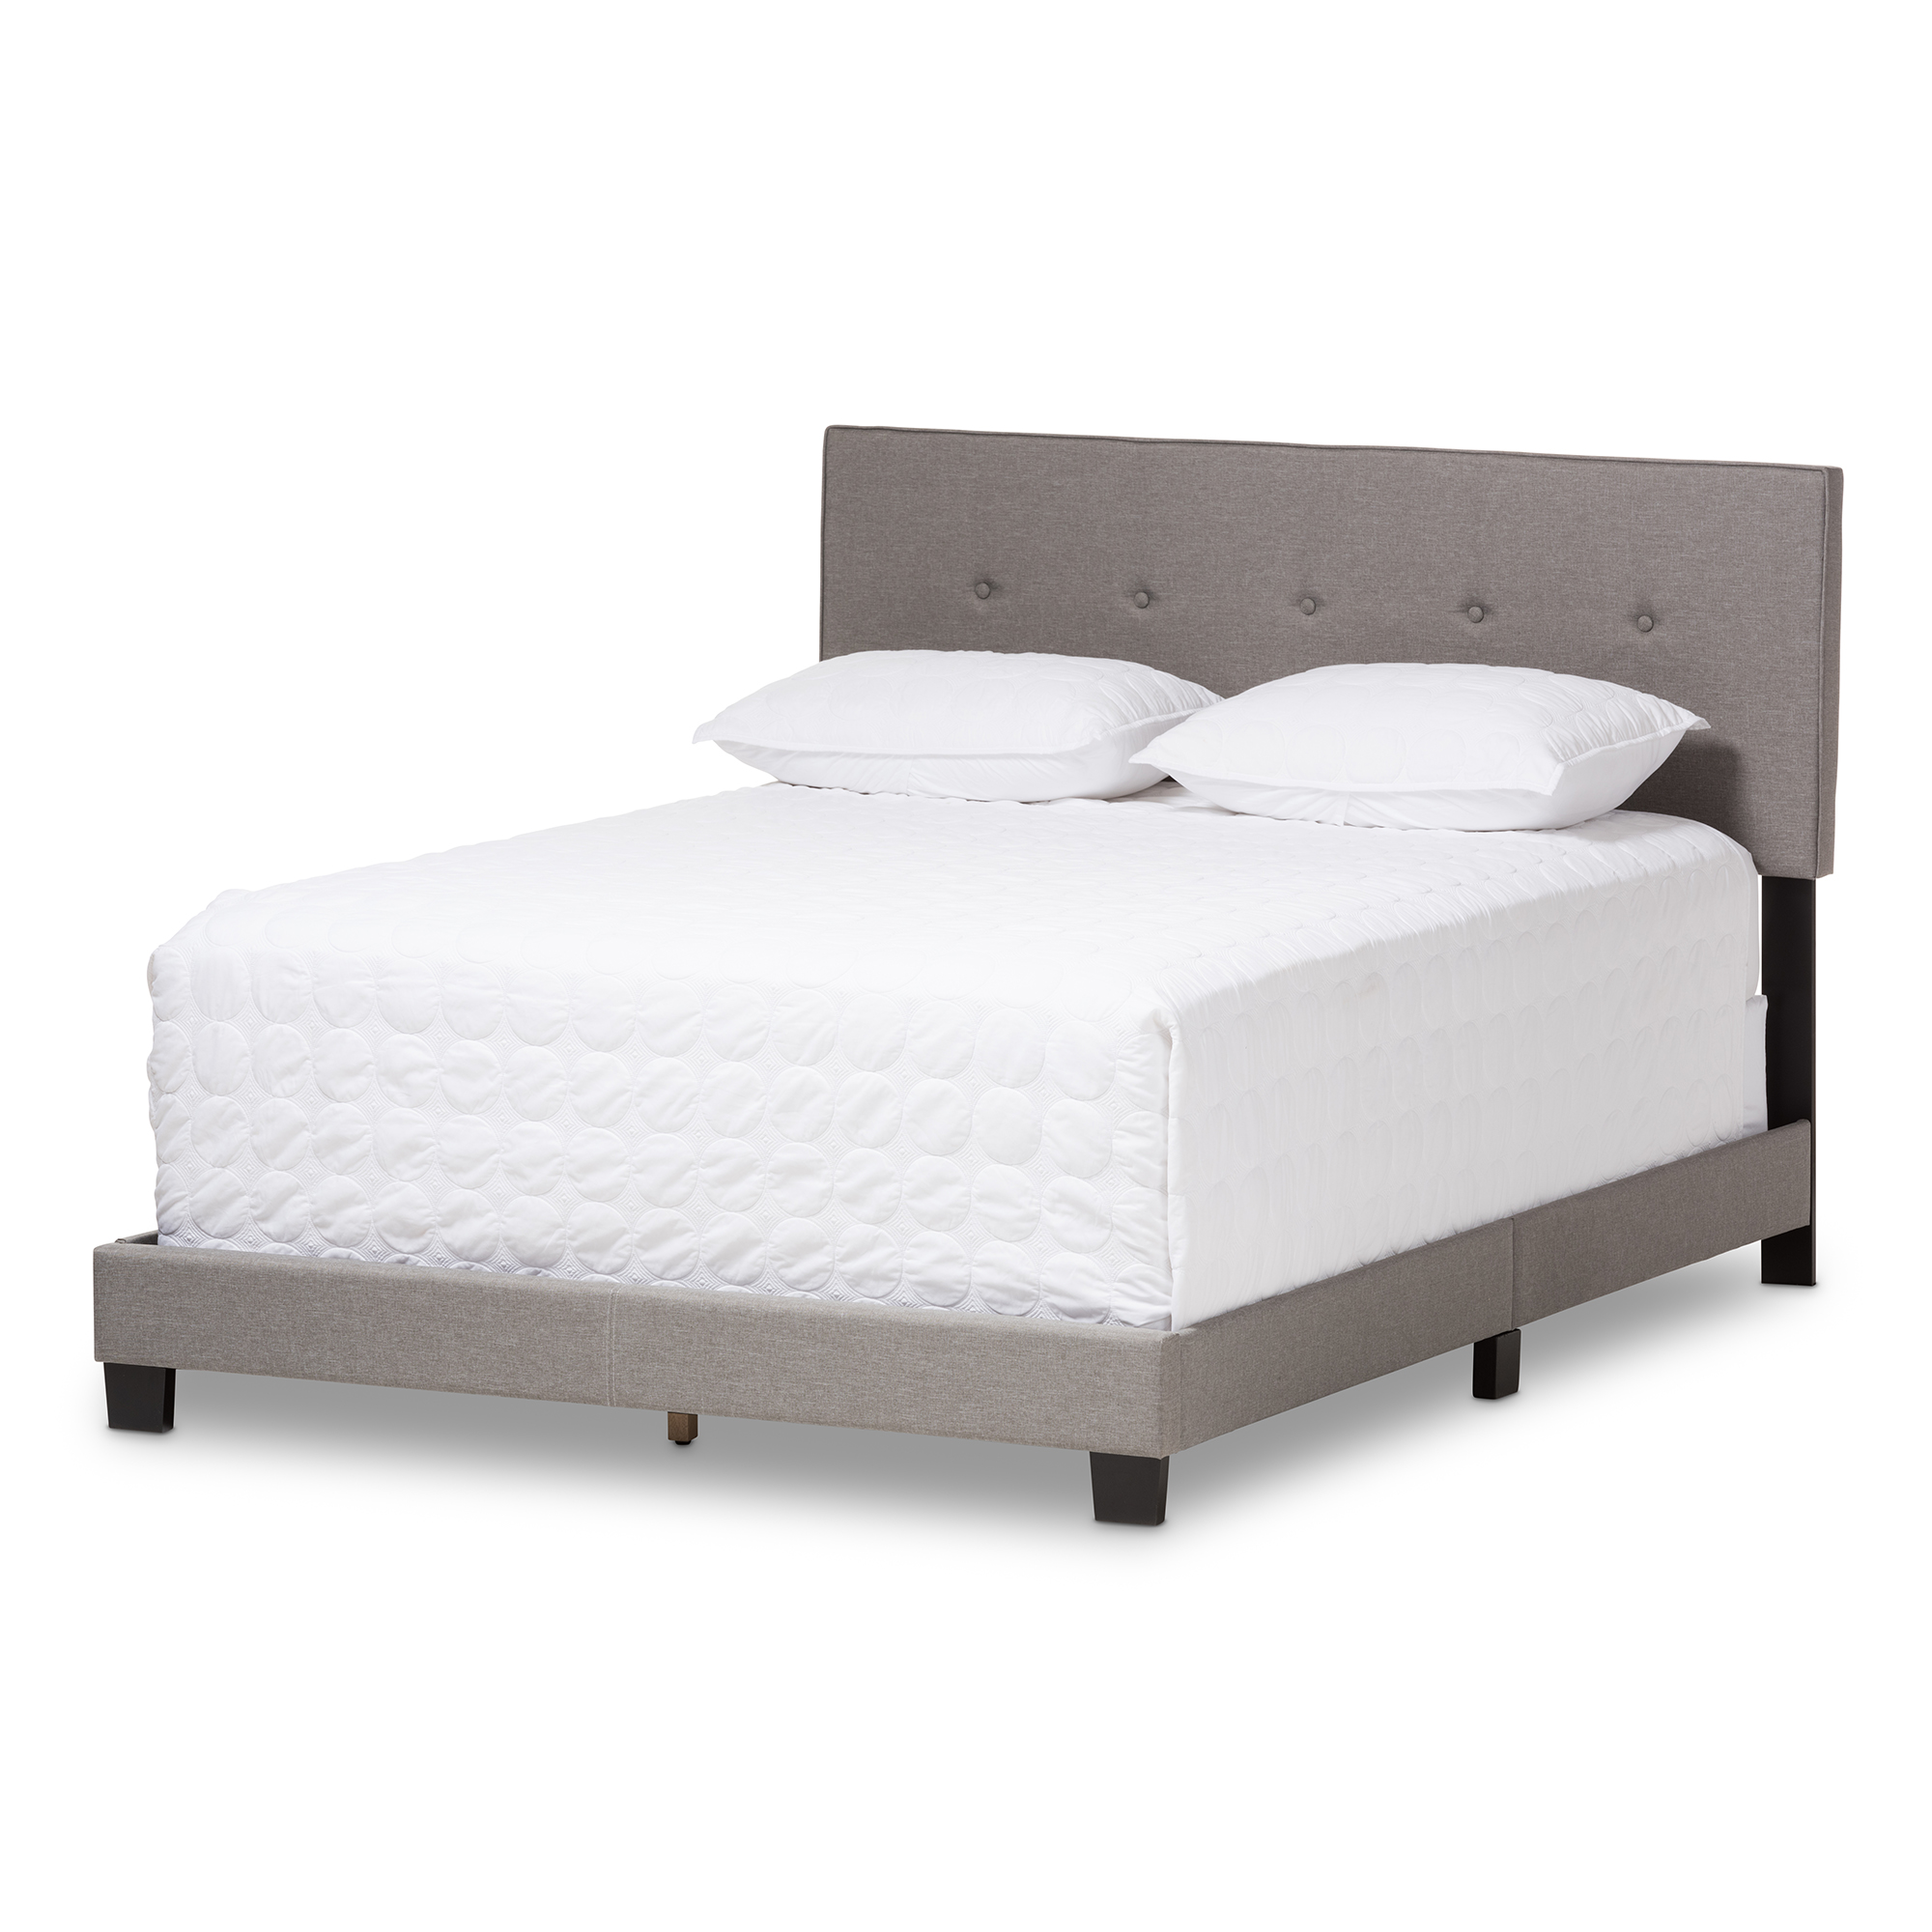 Arabella Double Bed Frame 4FT6 Upholstered Fabric Modern Light Grey Linen New 